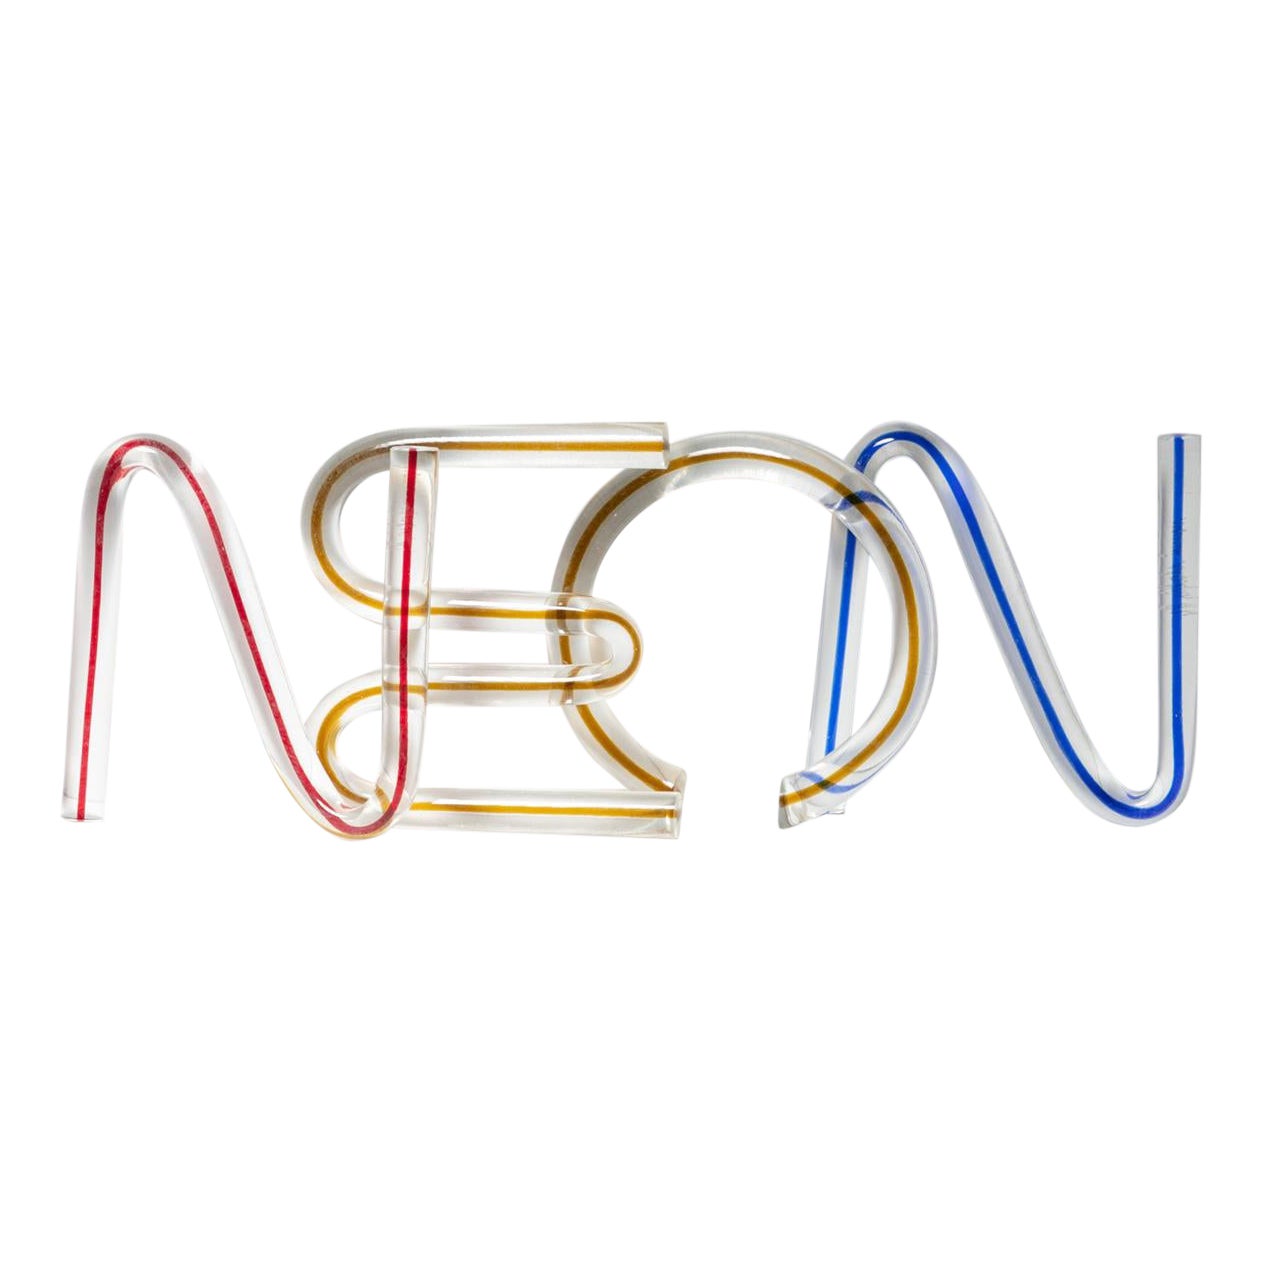 Letters en cristal « N » « E » « O » « N » de Massimo Vignelli pour Venini, Italie, années 1980